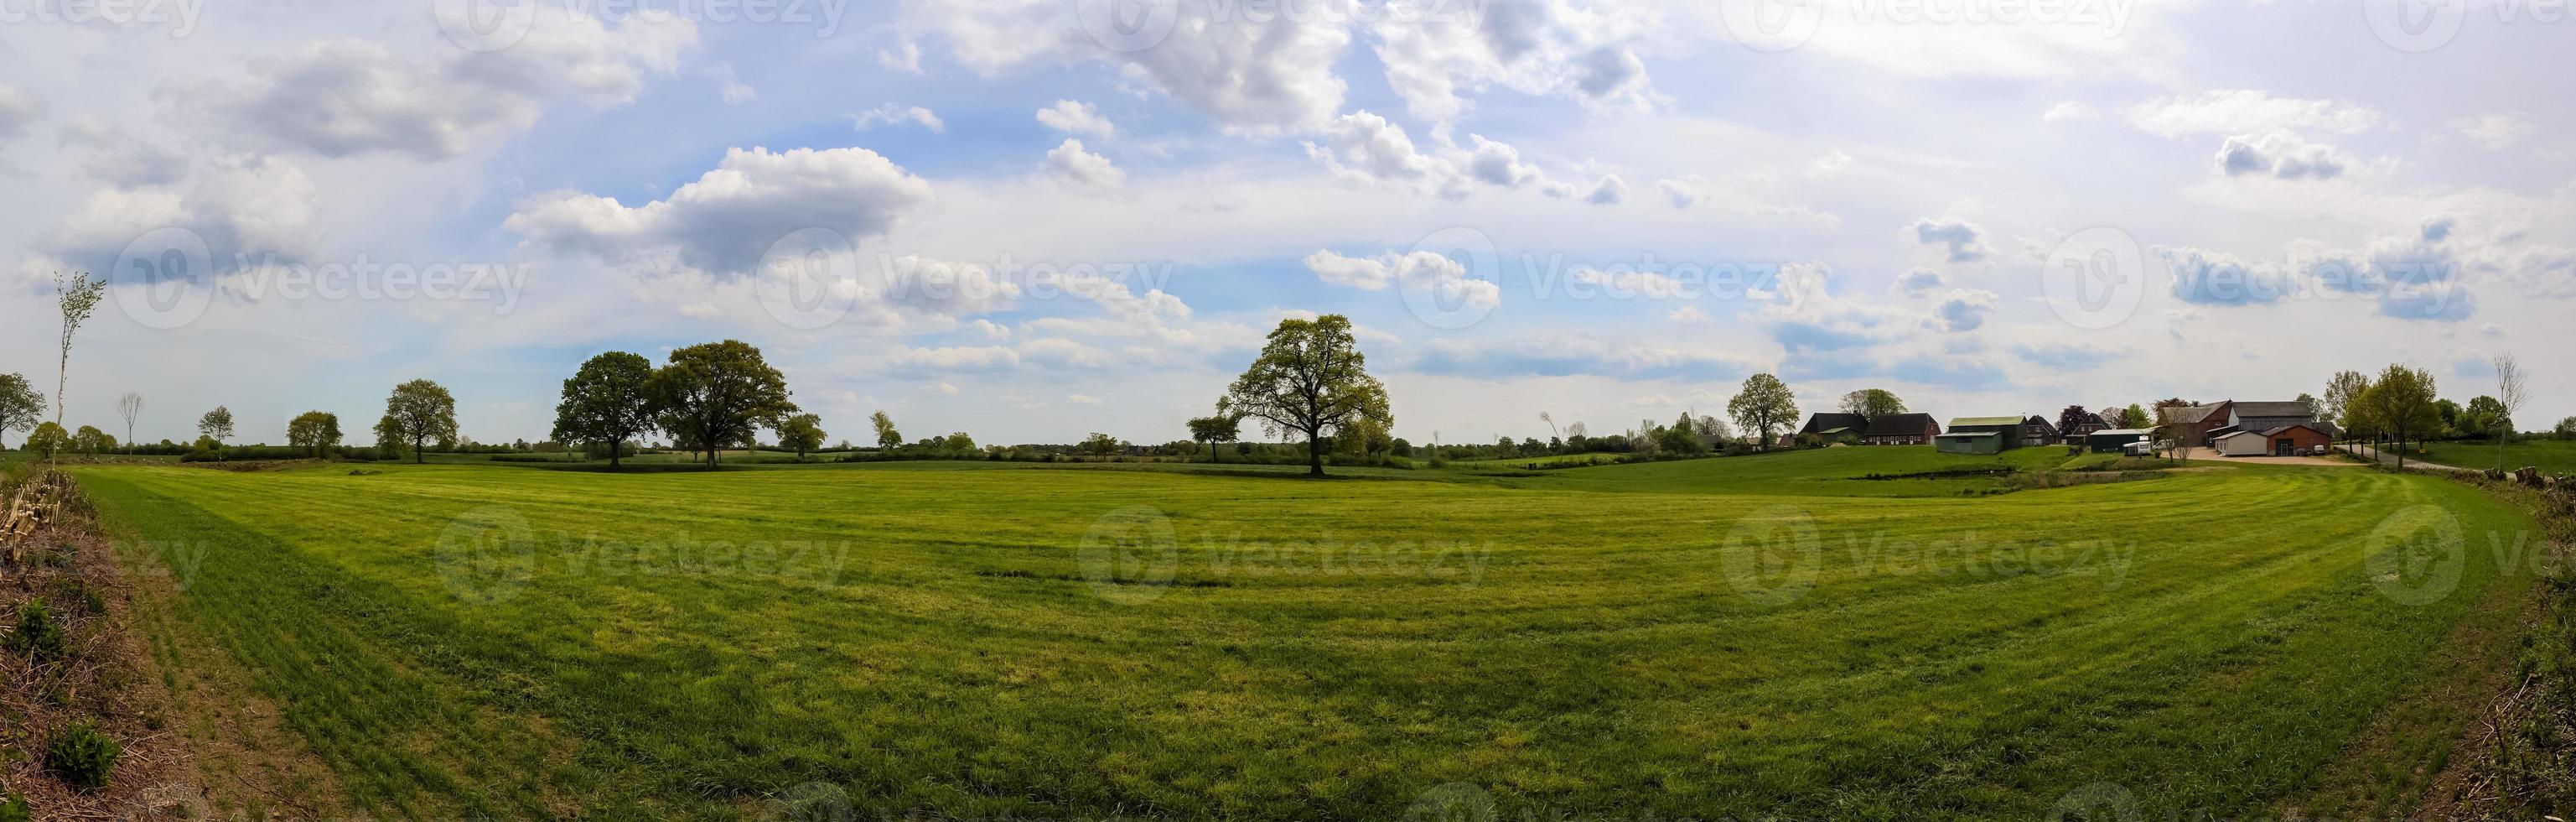 vackert högupplöst panorama av ett landskap med åkrar och grönt gräs som finns i danmark och tyskland. foto